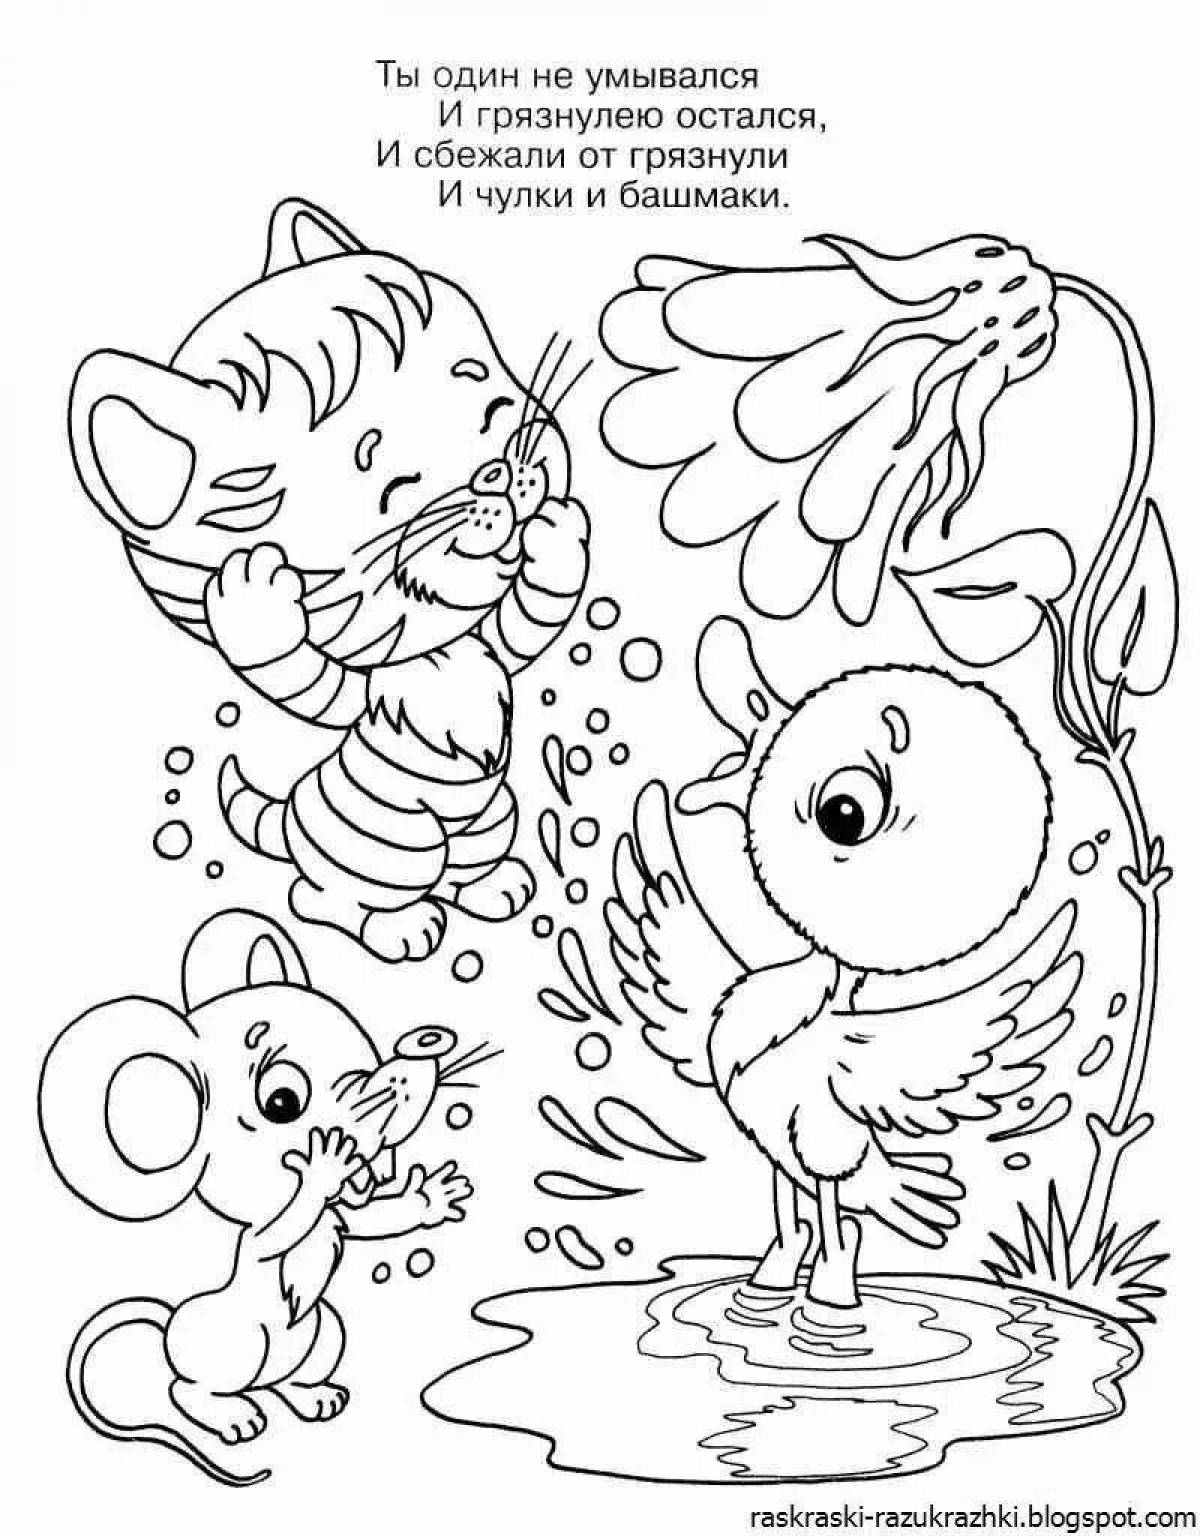 Chukovsky's brilliant fairy tale coloring book